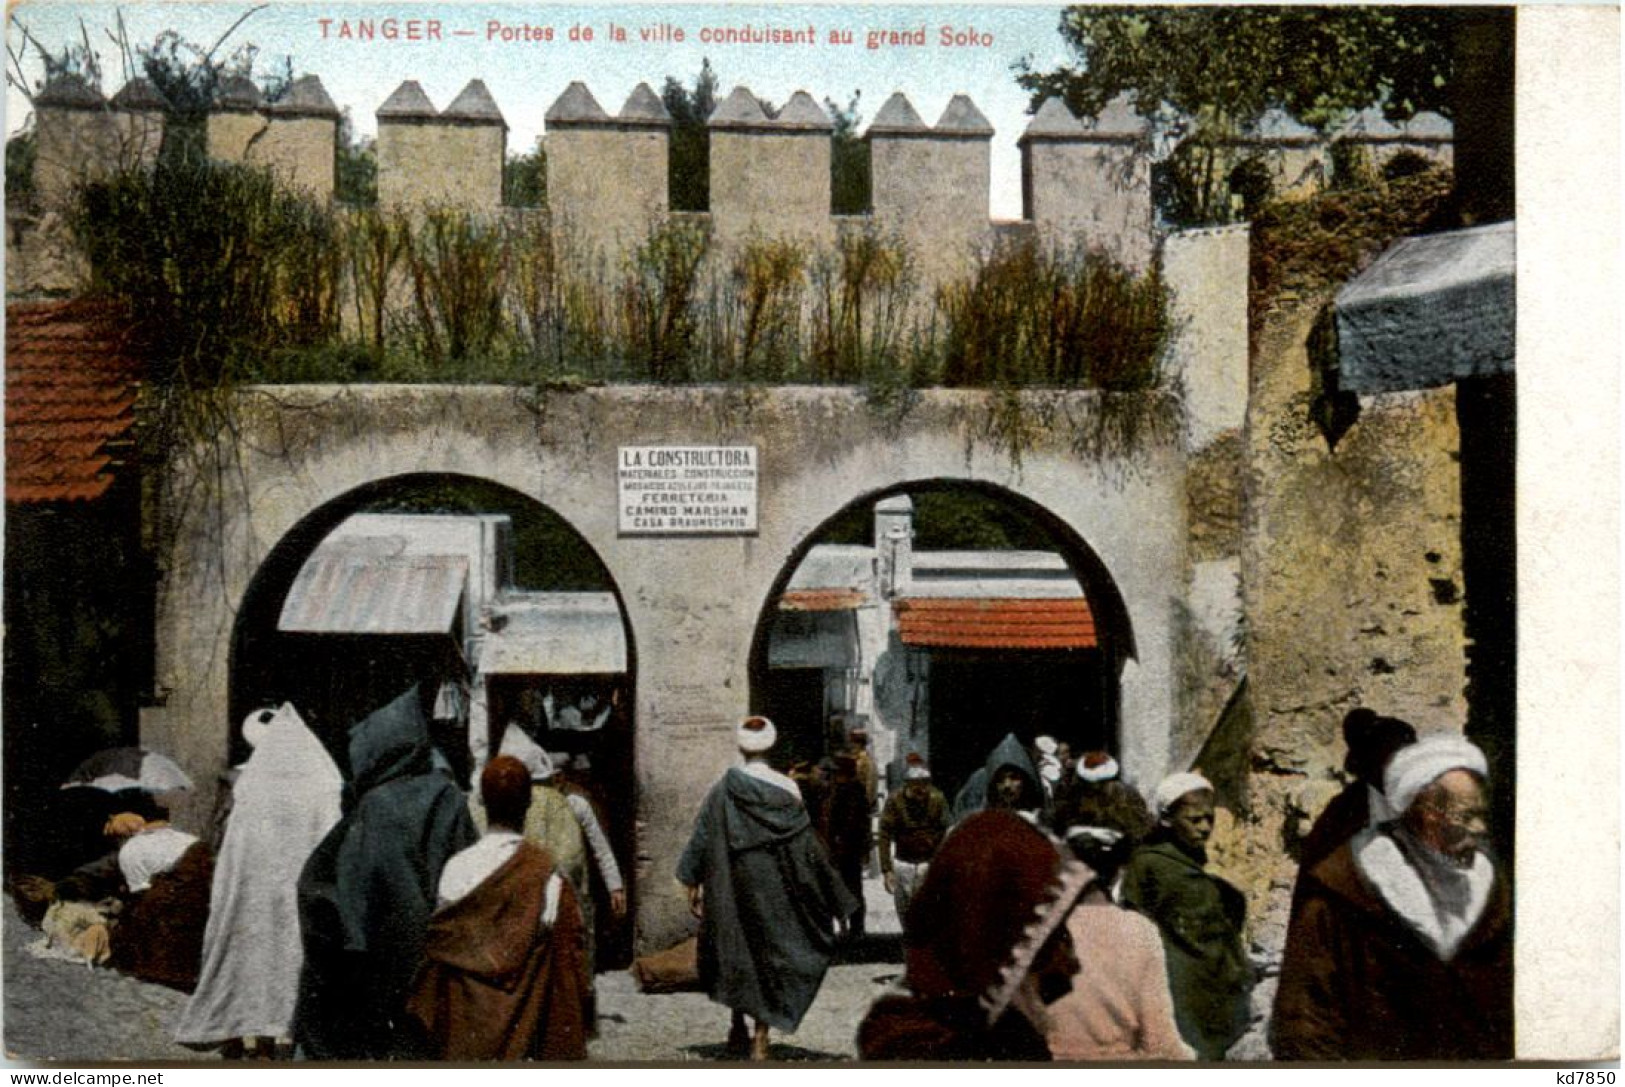 Tangier - Portes De La Ville Conduisant - Tanger